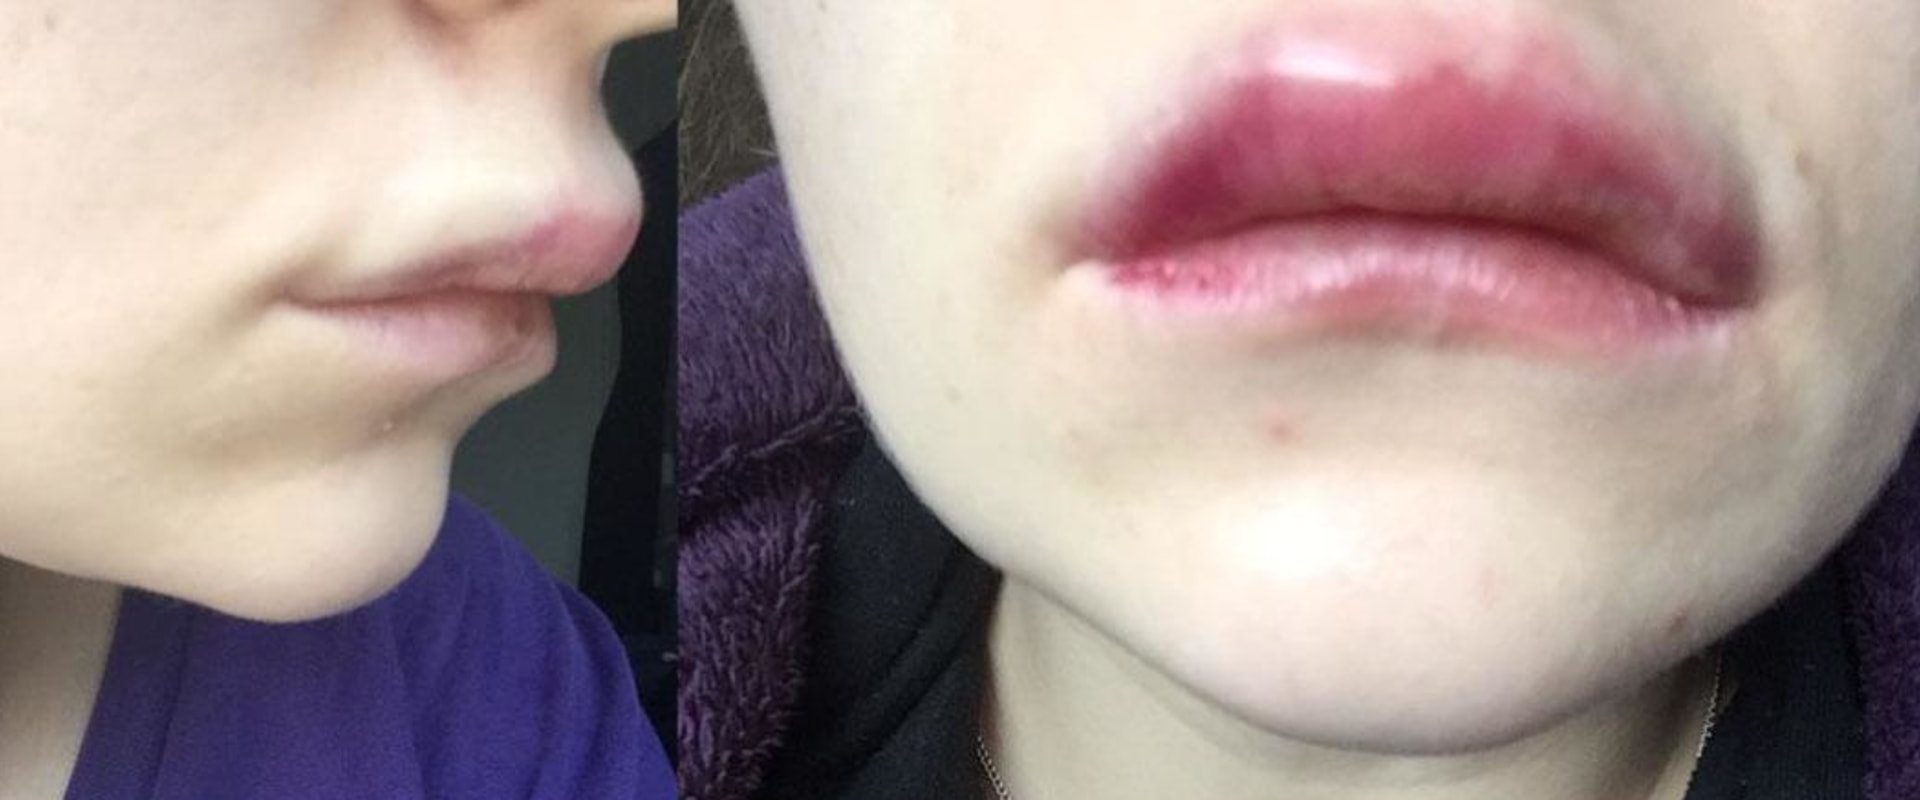 Cuánto dura el relleno de labios con ácido hialurónico?